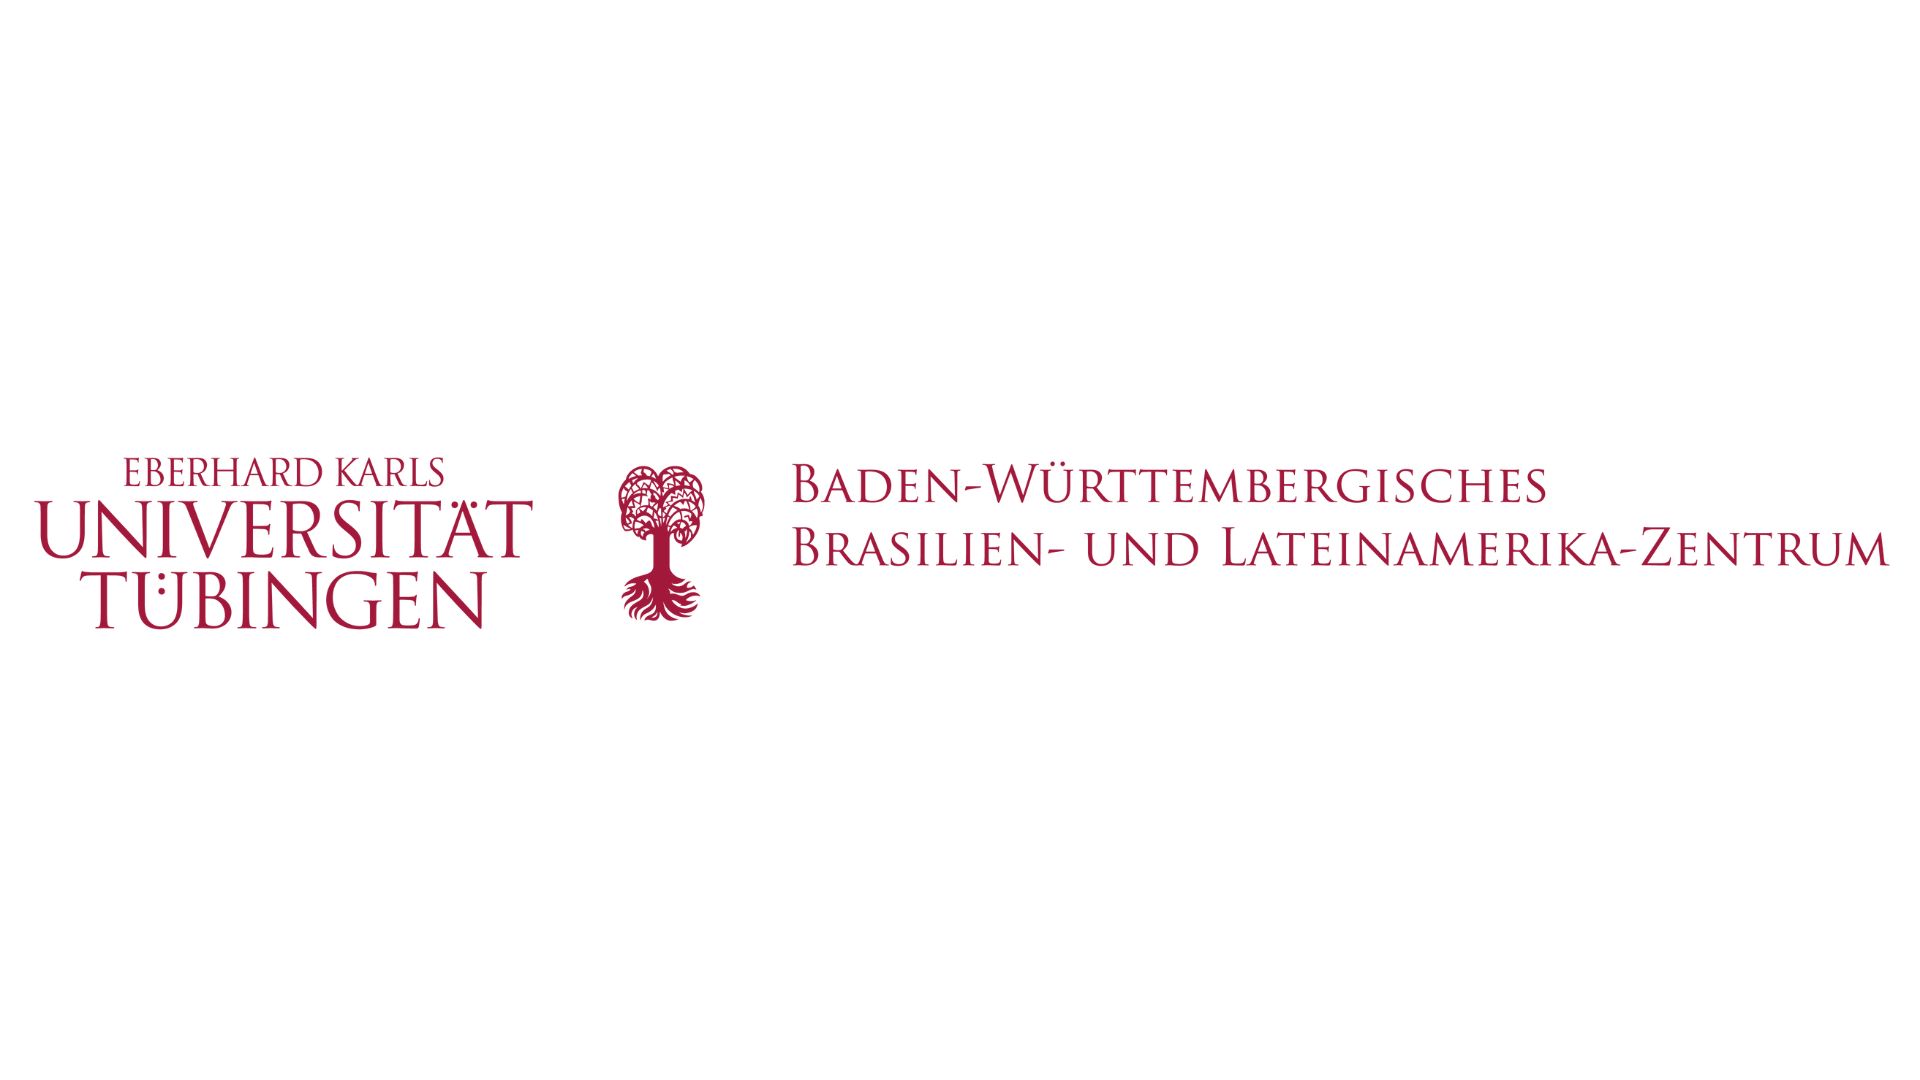 Centro Brasileiro e Latino-Americano de Baden-Württemberg da Universidade de Tübingen